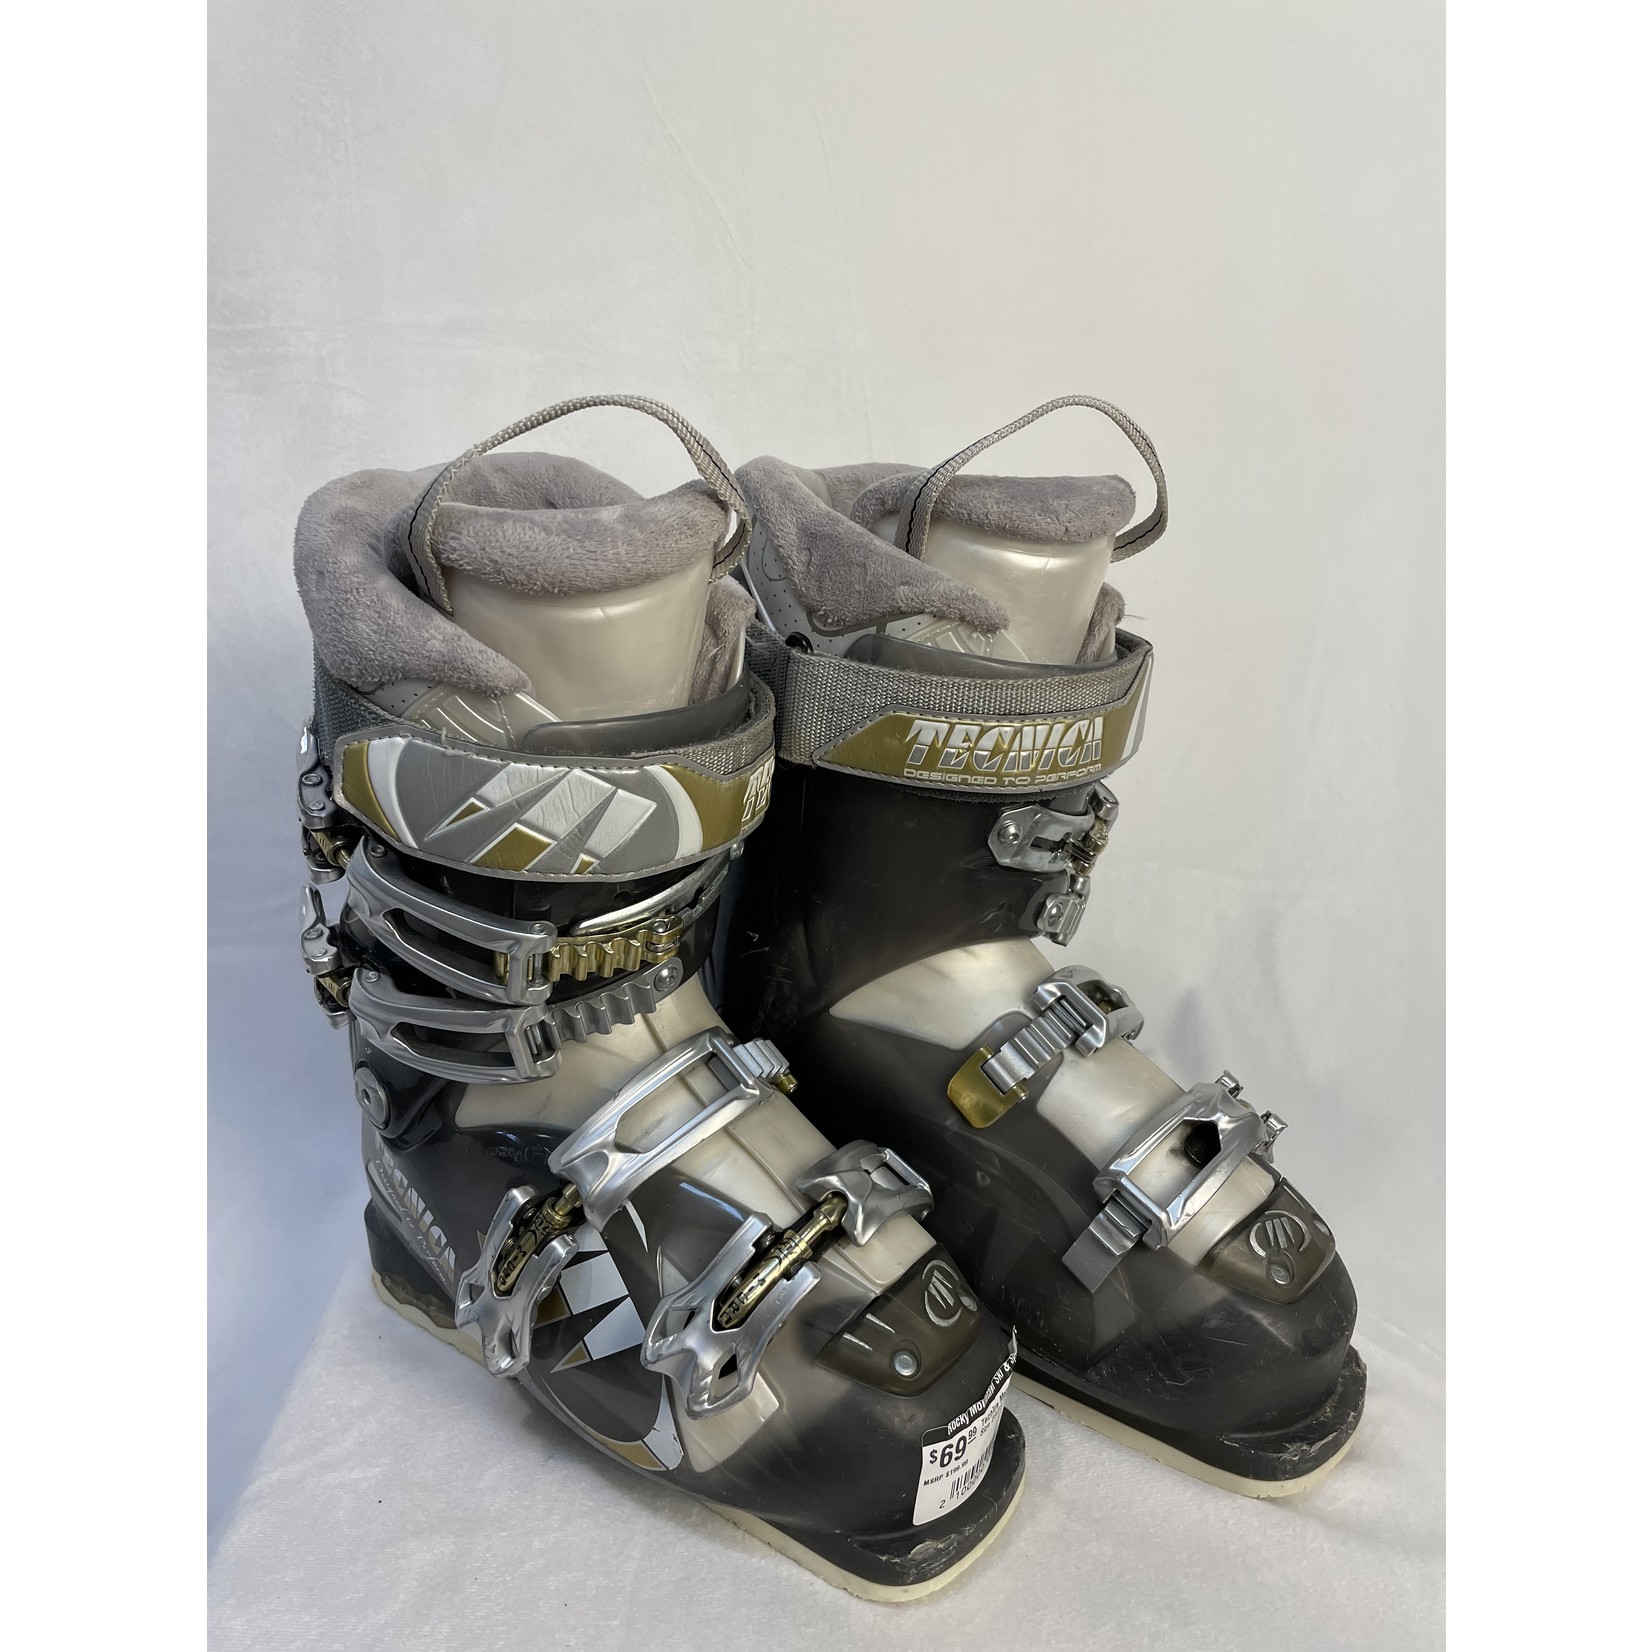 Tecnica Tecnica Mega 10 Ski Boots, Size 23/23.5 WMNS